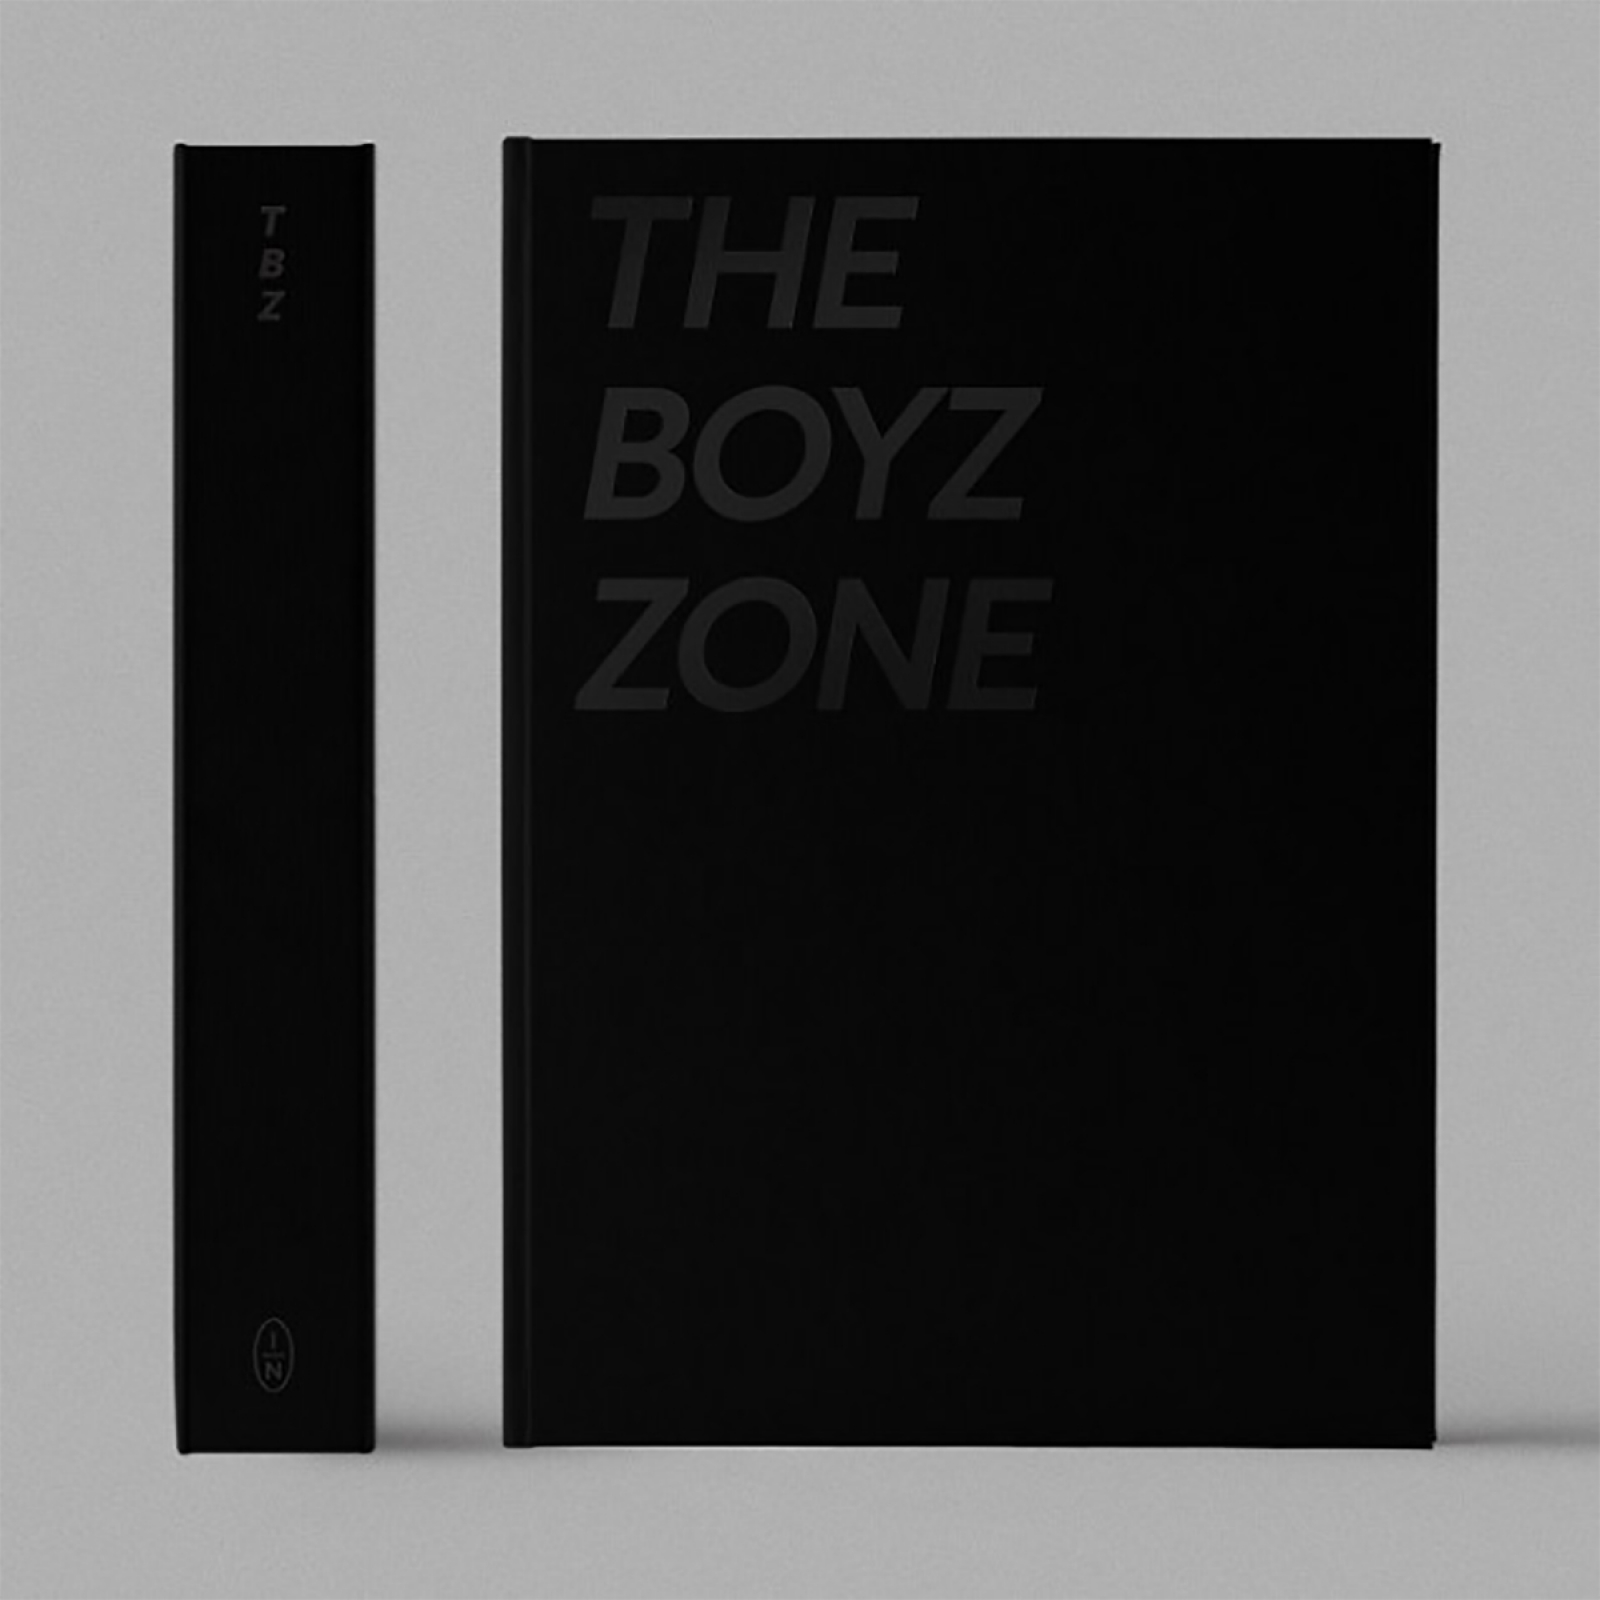 [全款] [写真集] THE BOYZ - THE BOYZ TOUR PHOTOBOOK [THE BOYZ ZONE]_Oxygen02_池昌民氧气站